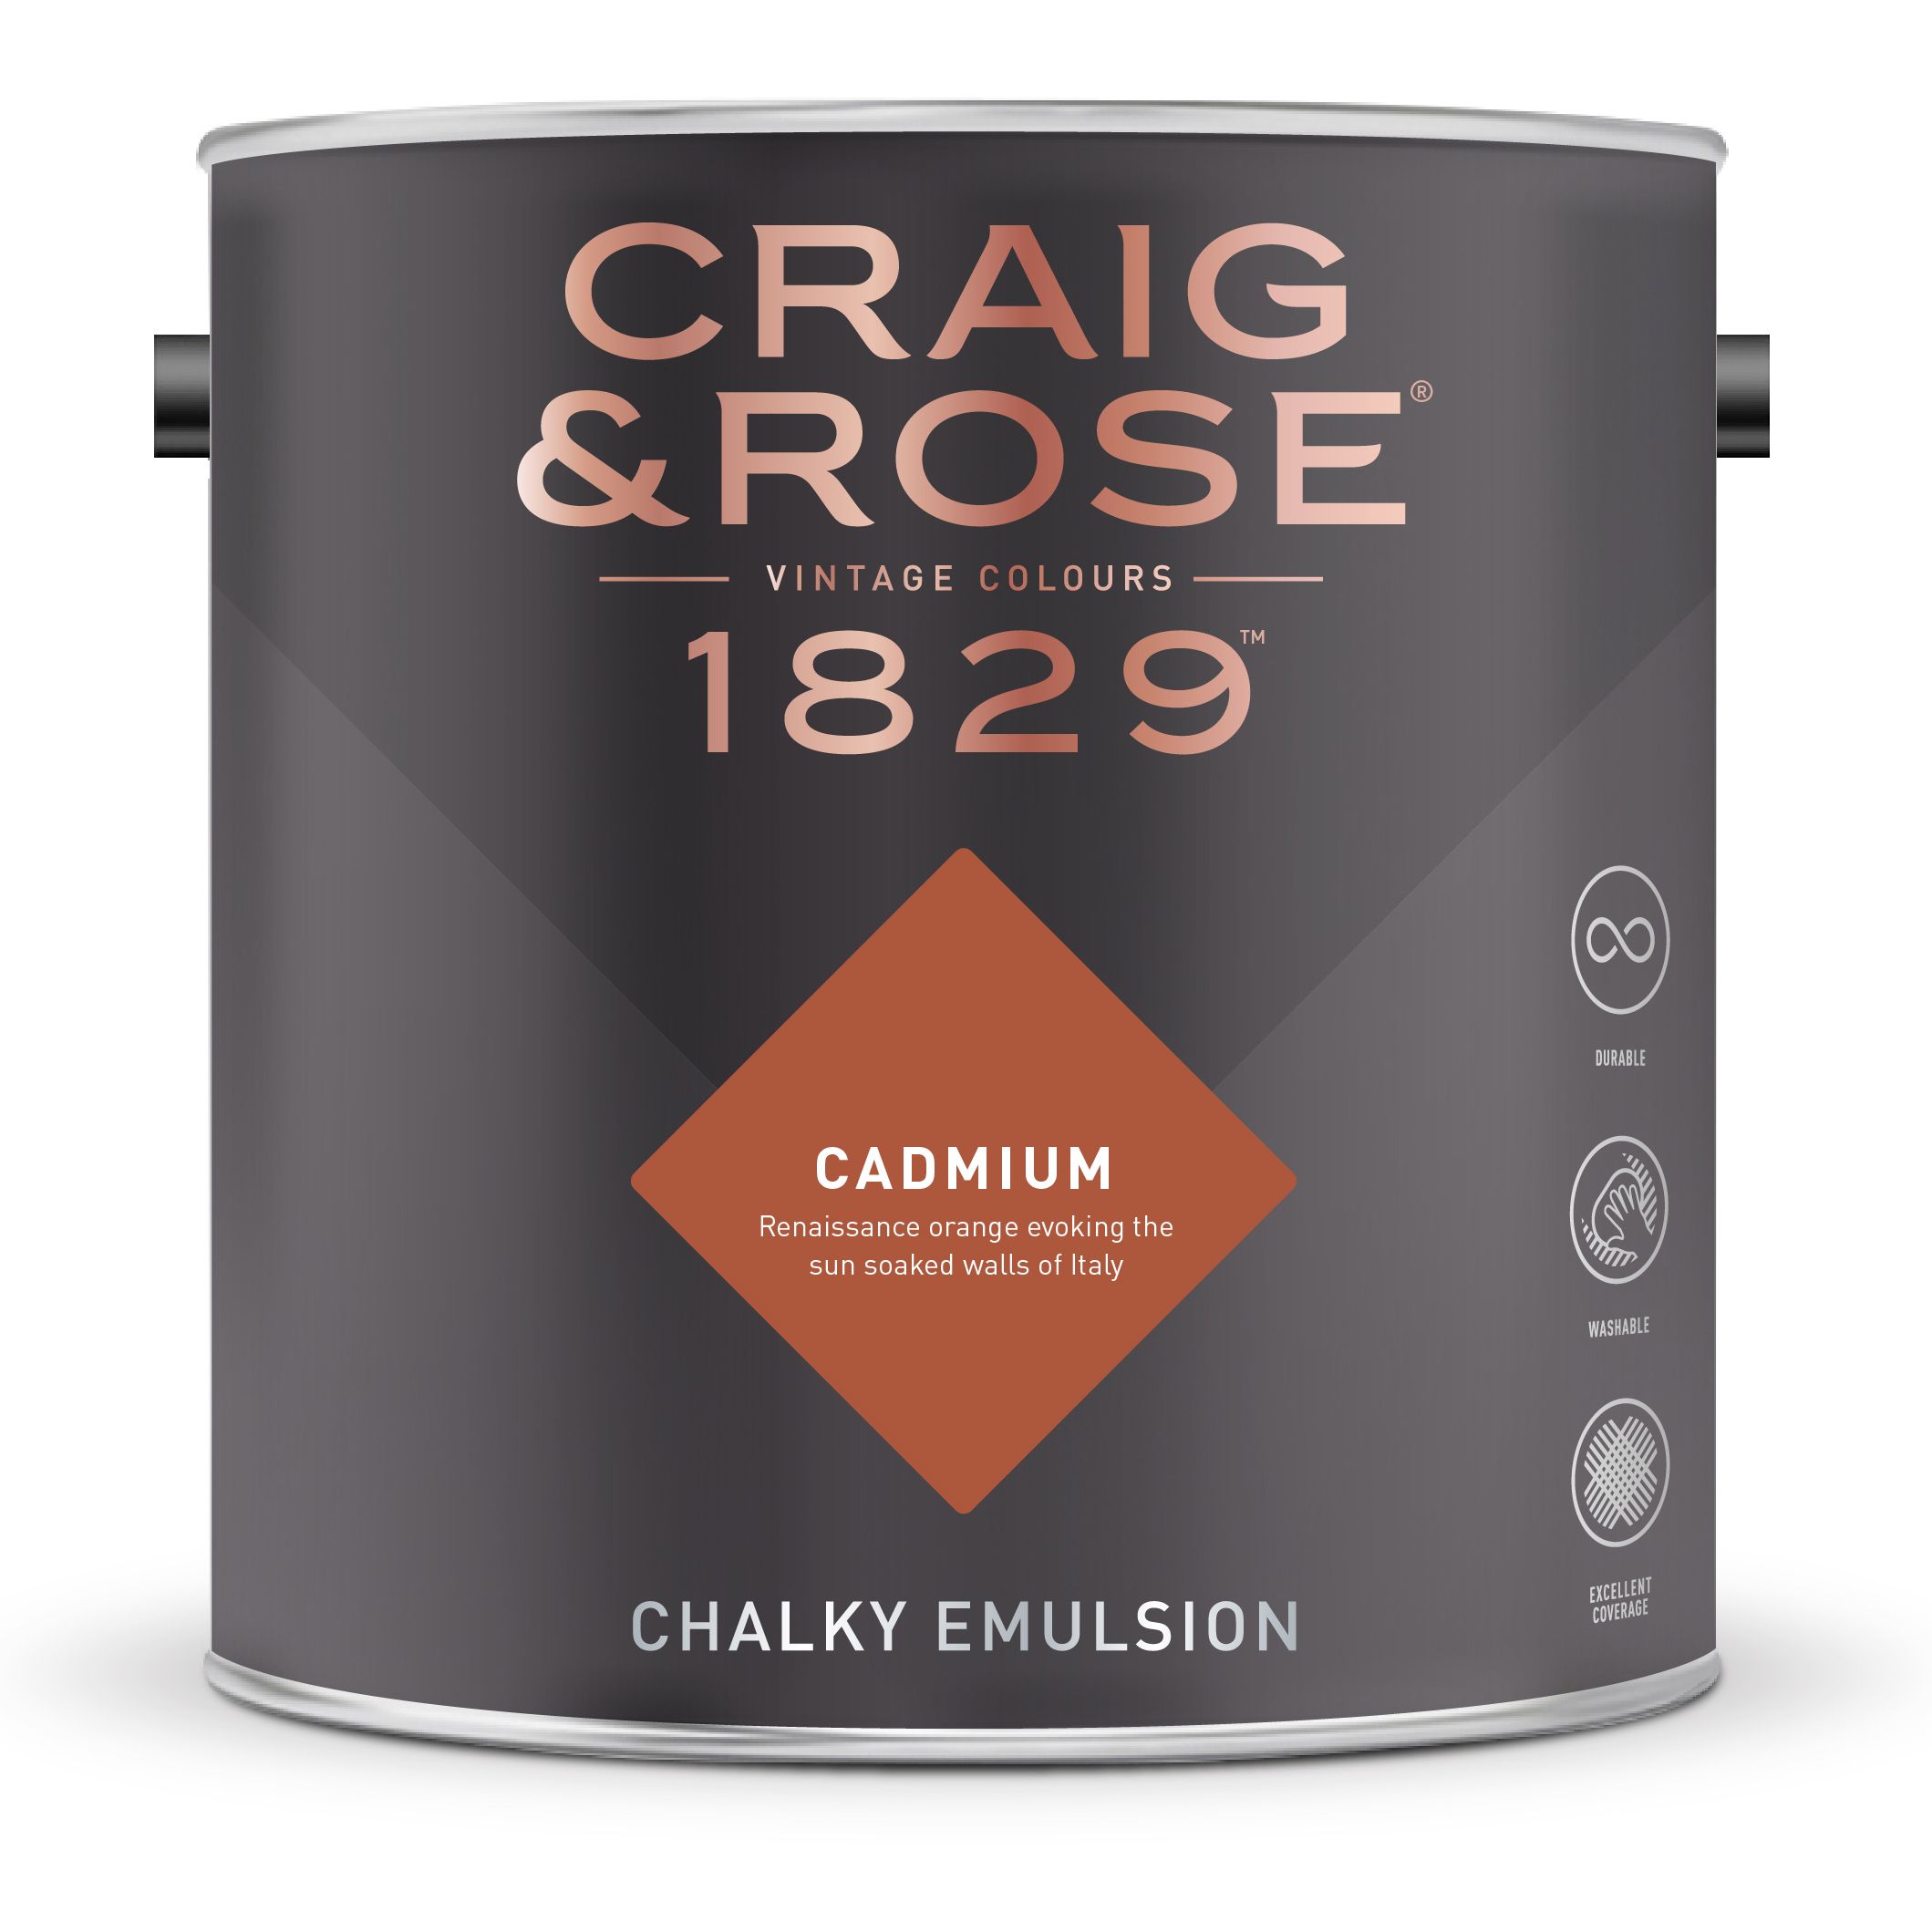 Craig & Rose 1829 Cadmium Chalky Emulsion paint, 2.5L